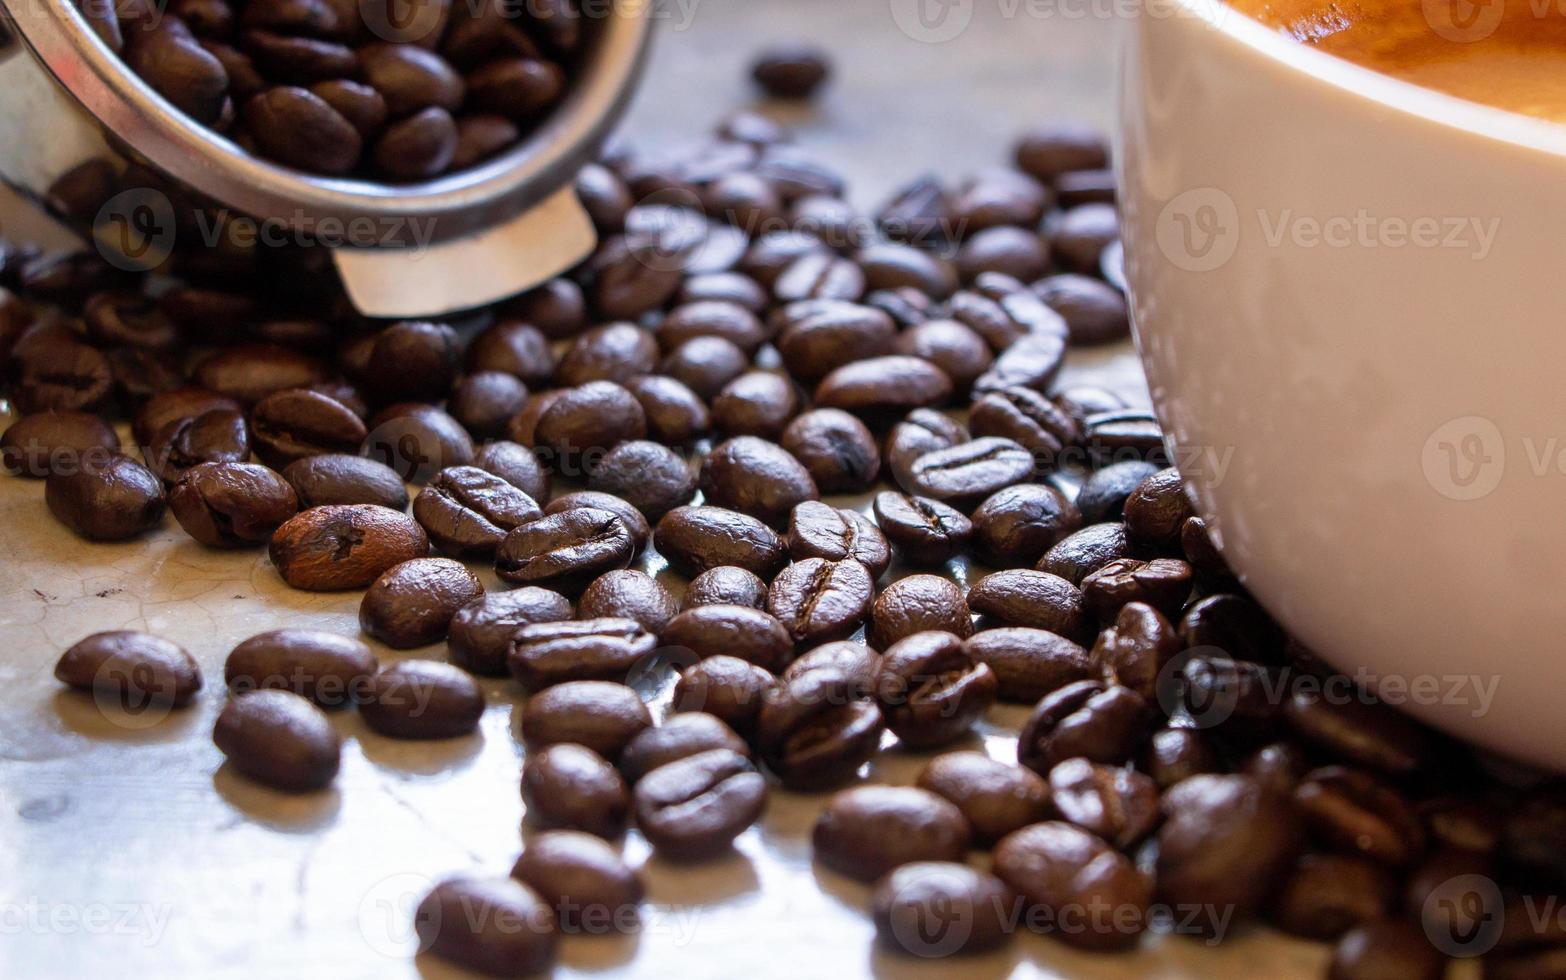 granos de café arábica asados orgánicos sobre una mesa de hormigón entre la cesta del portafiltros y la taza de café. centrarse en los granos de café en medio de la pila foto